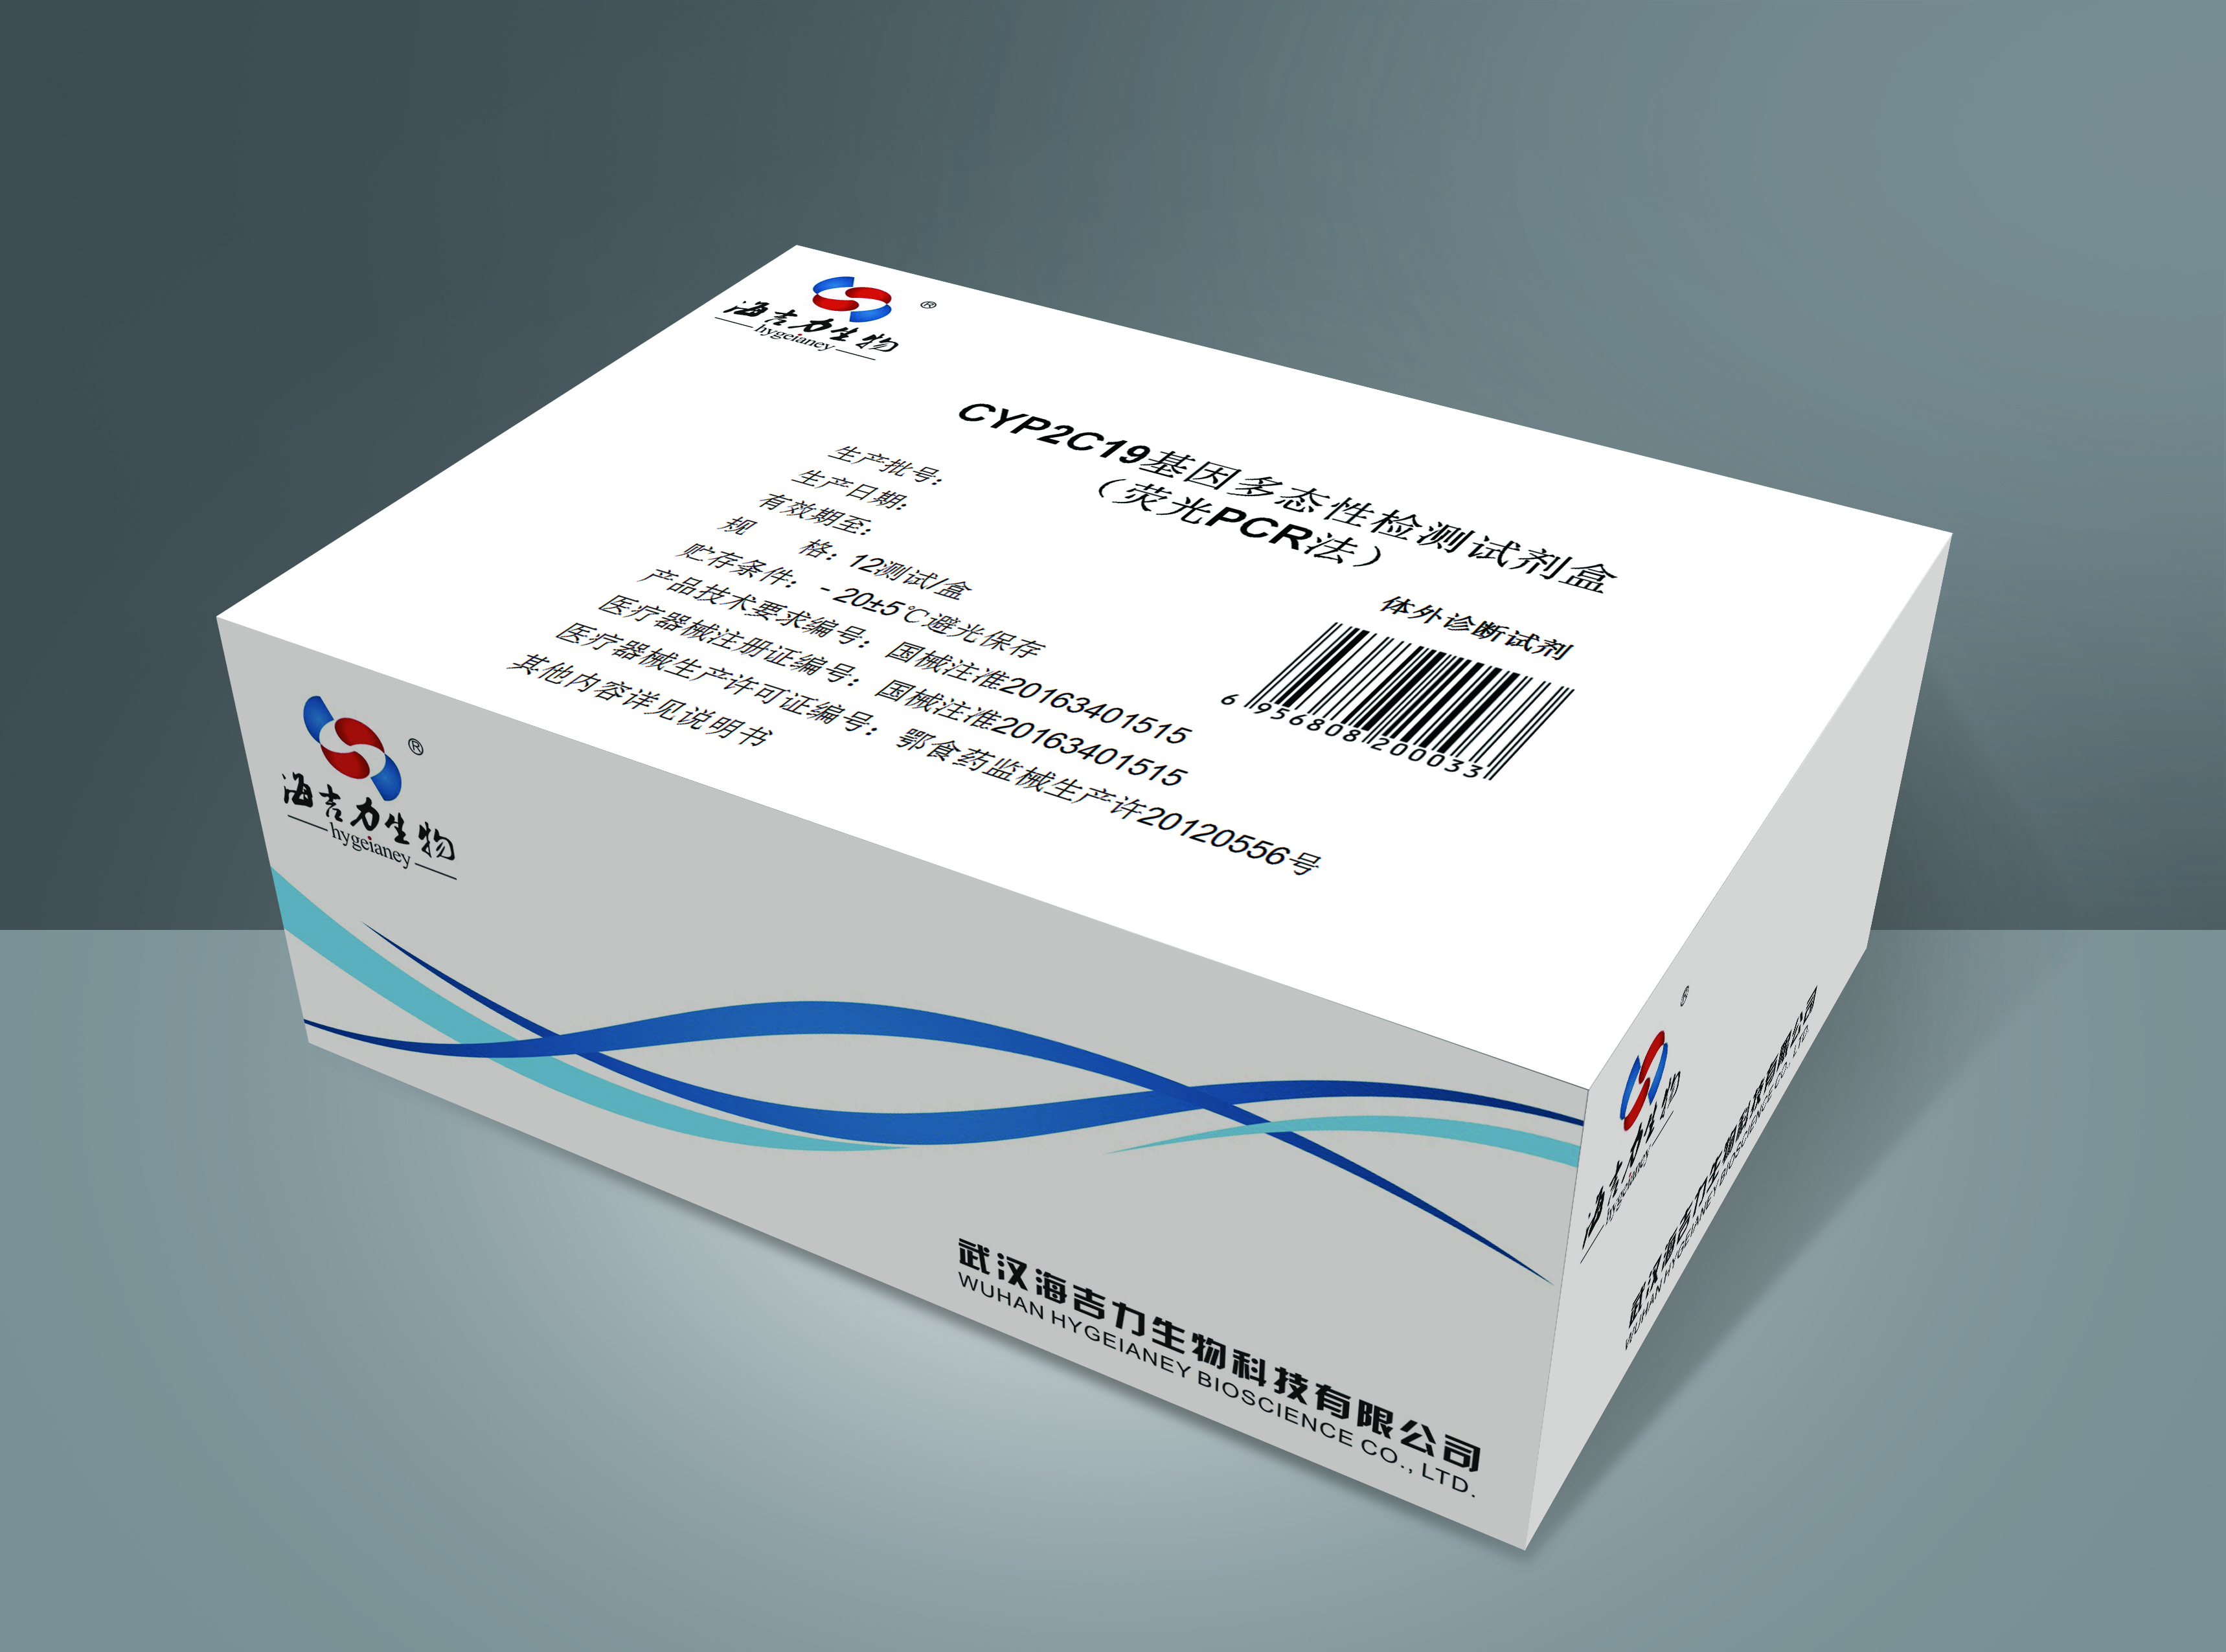 【海吉力】CYP2C19基因多态性检测试剂盒(荧光PCR法)